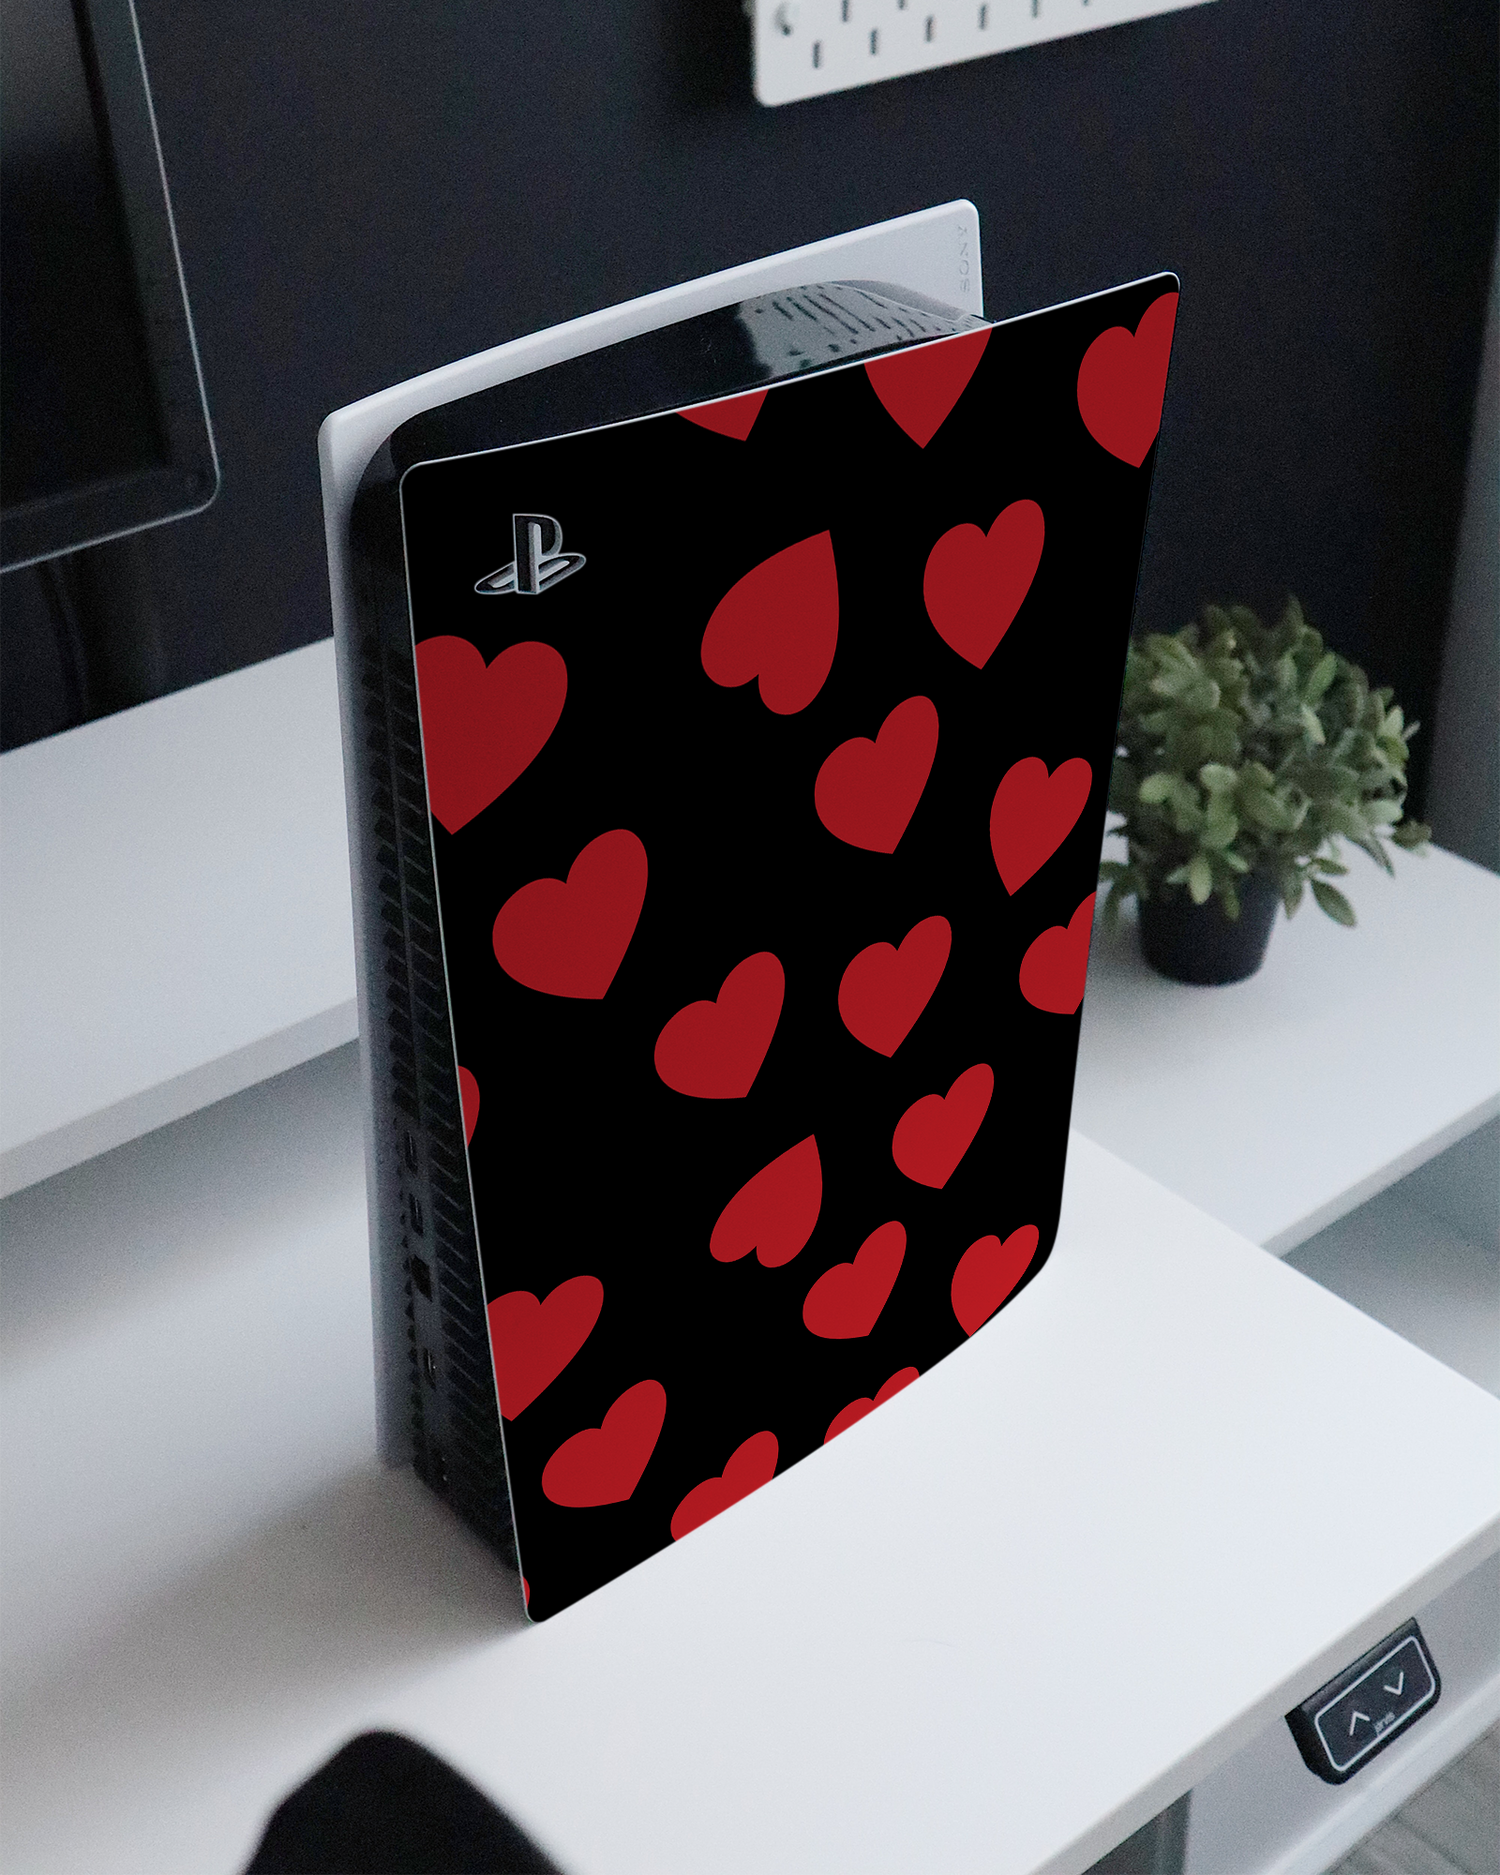 Repeating Hearts Konsolen Aufkleber für Sony PlayStation 5 auf einem Sideboard